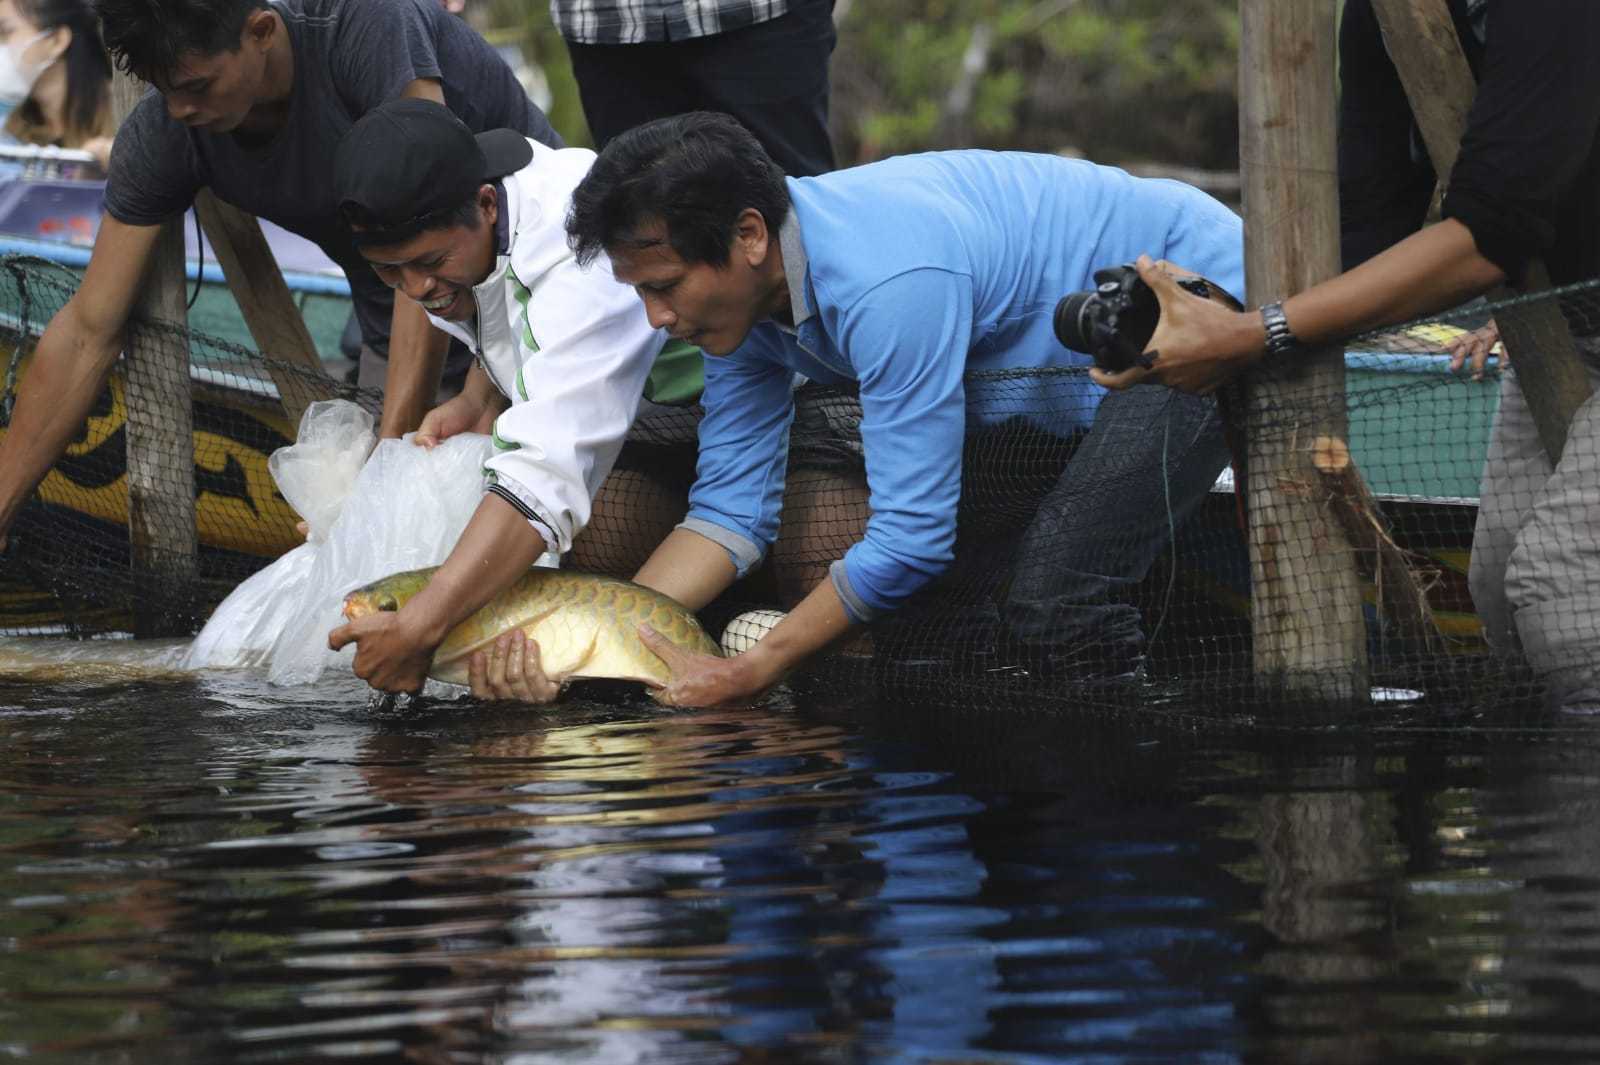 Pelepasliaran ikan arwana super red oleh BKSDA Kalimantan Barat pada 23 Oktober 2021 | Dok. BKSDA Kalbar